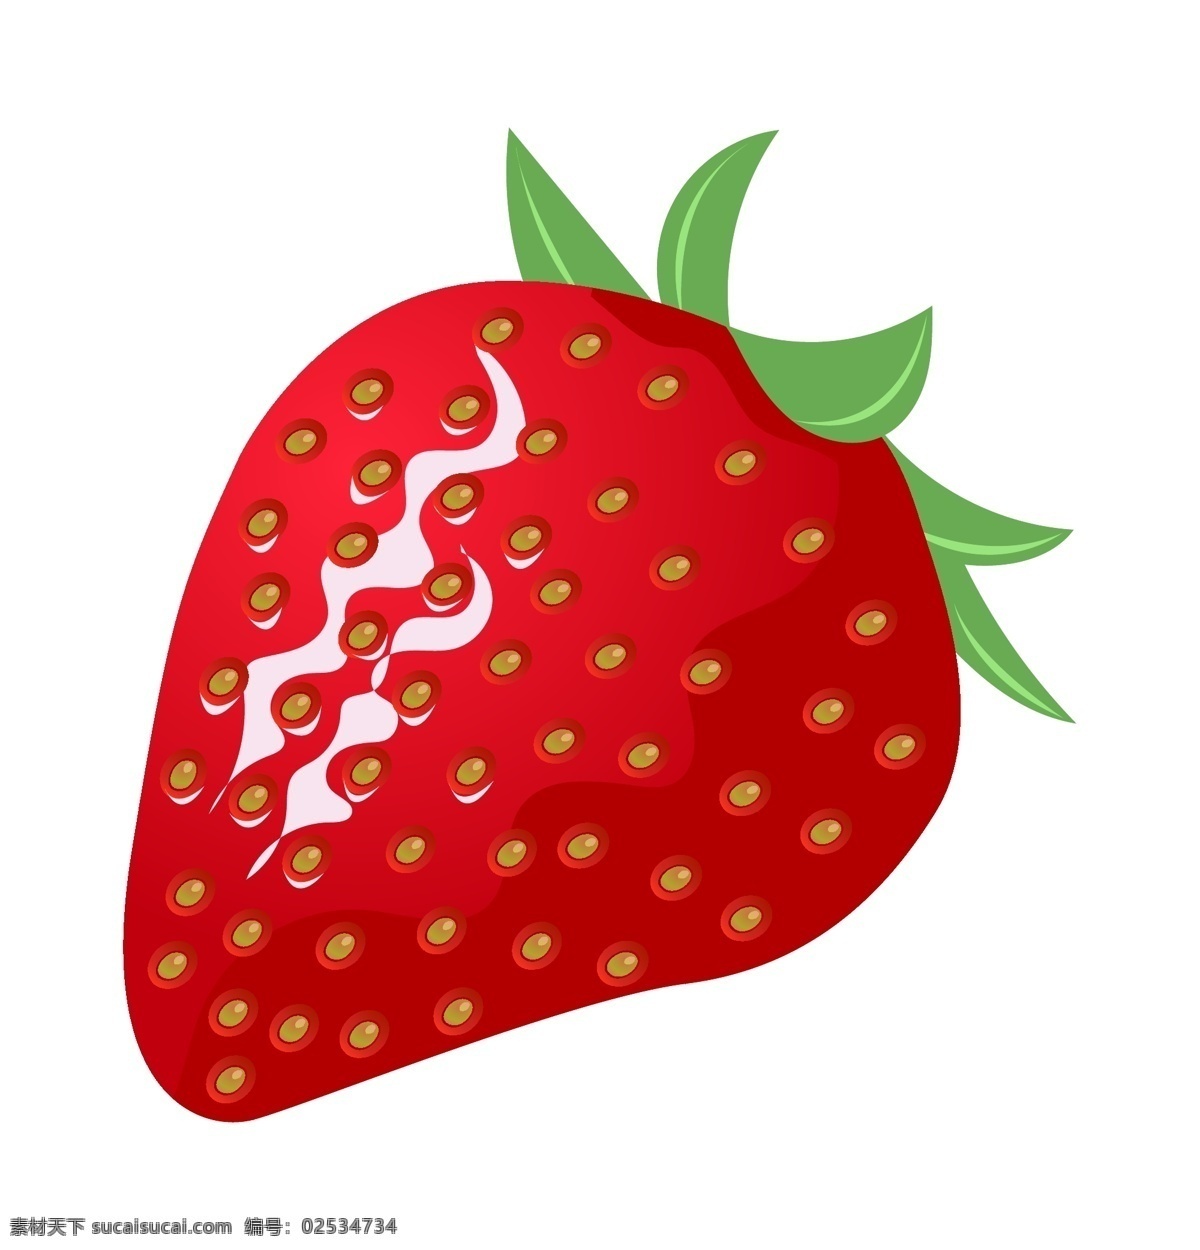 手绘 诱人 草莓 插画 手绘草莓 绿色 叶子 红色的草莓 水果 仿真草莓 新鲜的草莓